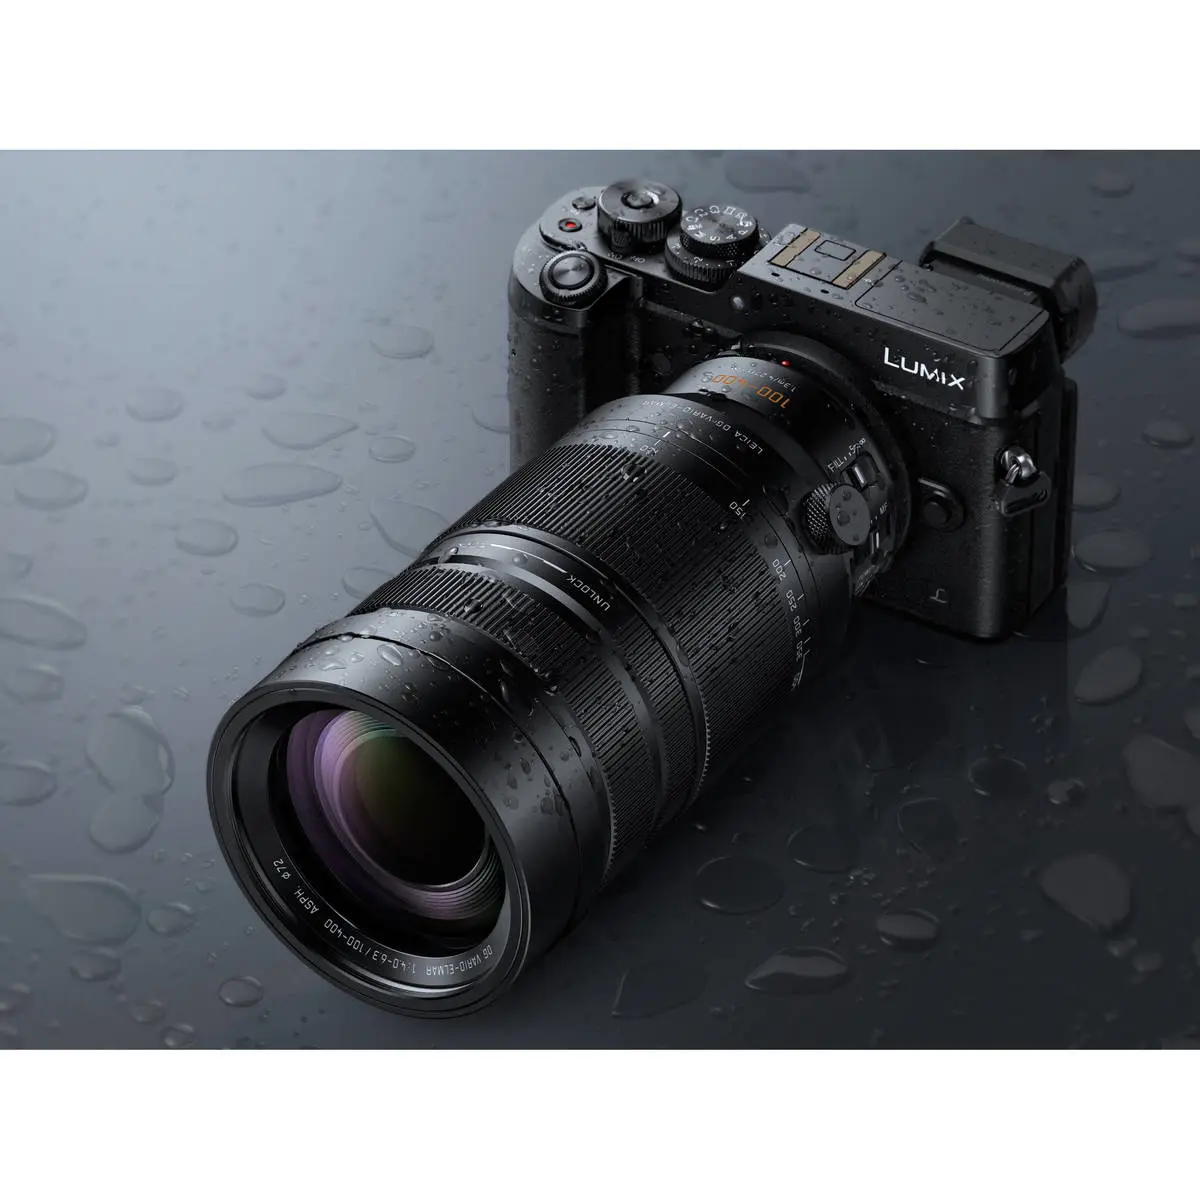 5. Panasonic DG V-Elmar 100-400mm F4.0-6.3 ASPH OIS Lens